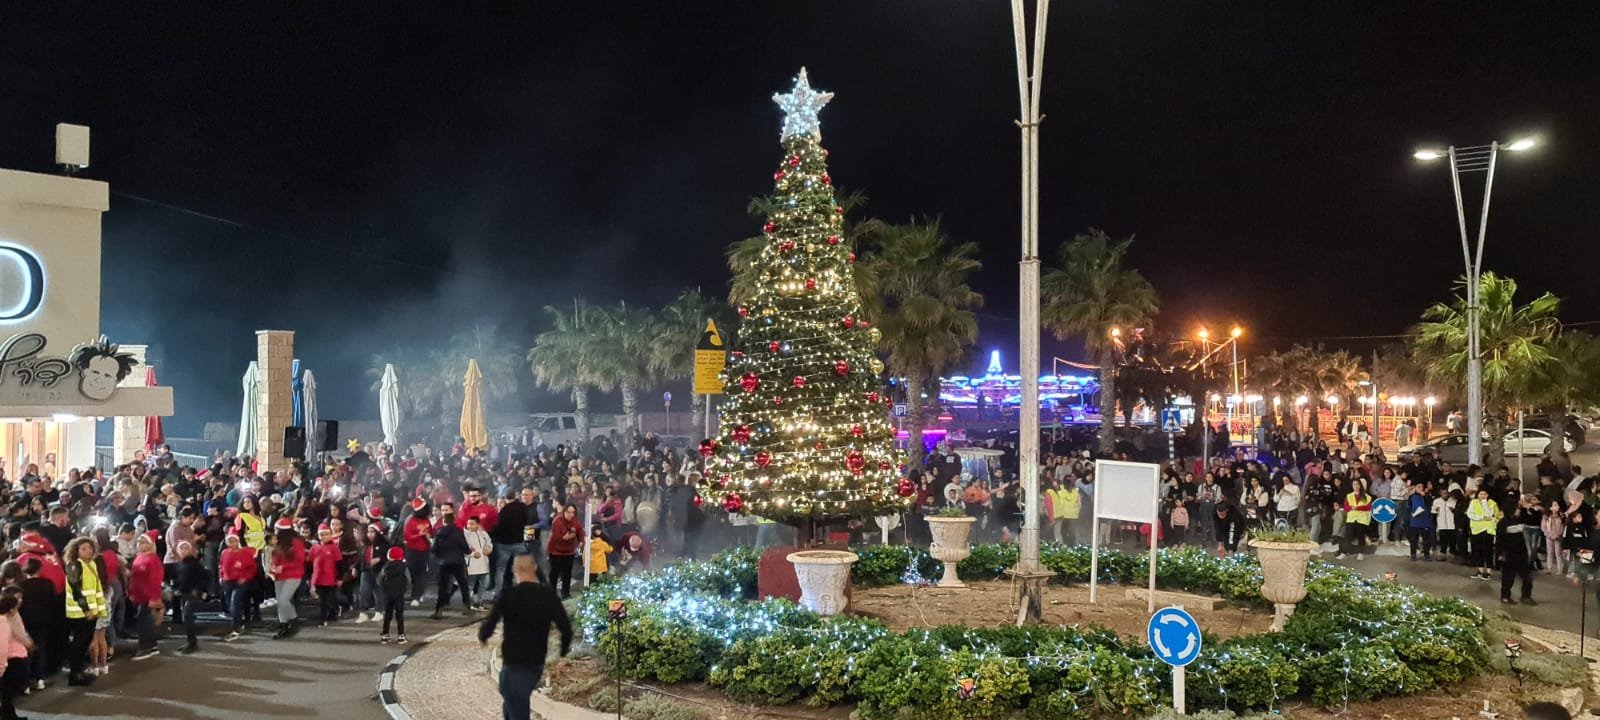 احتفال مميز لإضاءة شجرة الميلاد في عكا ومشاركة واسعة-12